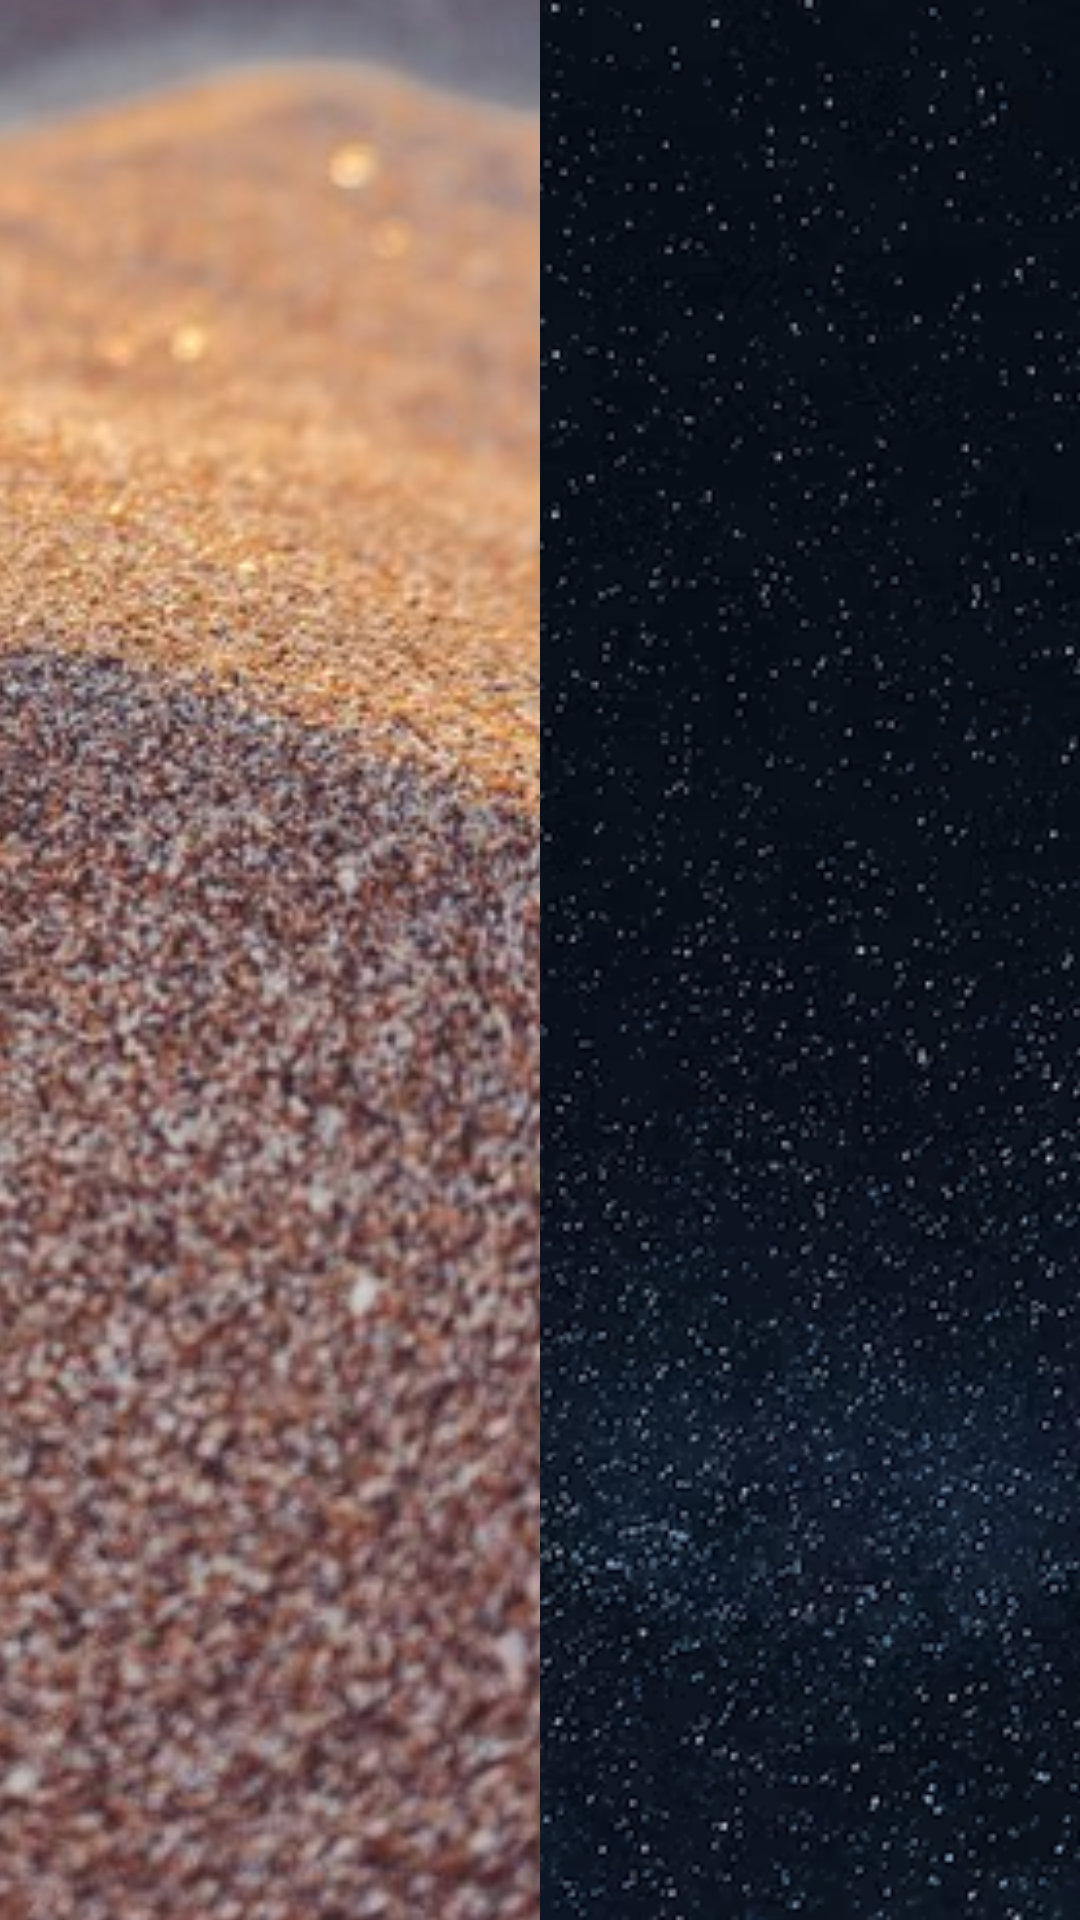 Contar todos os grãos de areia da Terra é uma numenalidade em se? - Quora